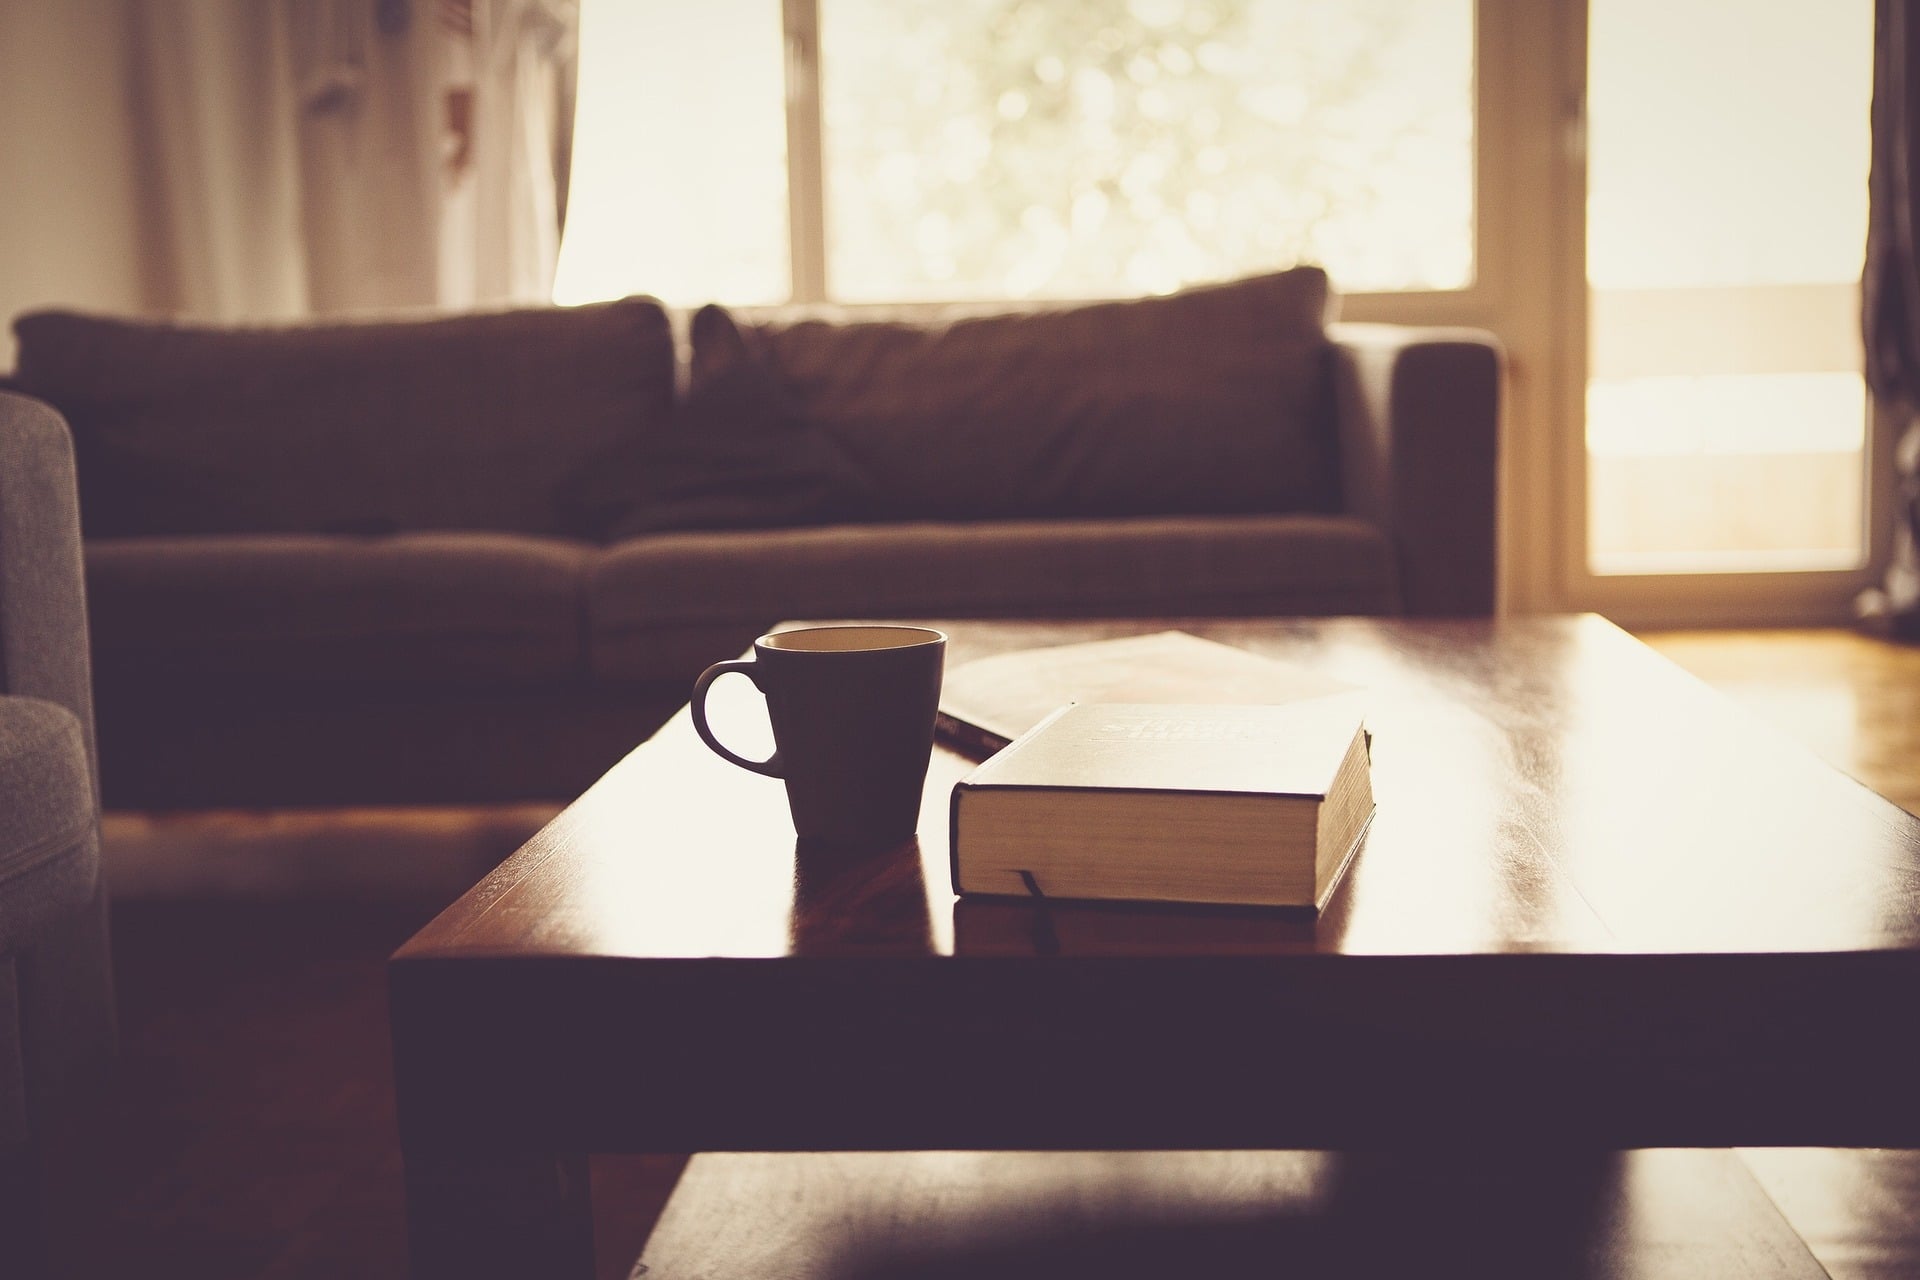 Sala com mesa de centro, com xícara e livro, sofá ao fundo. Imagem ilustrativa texto lavar sofá Meia Praia.